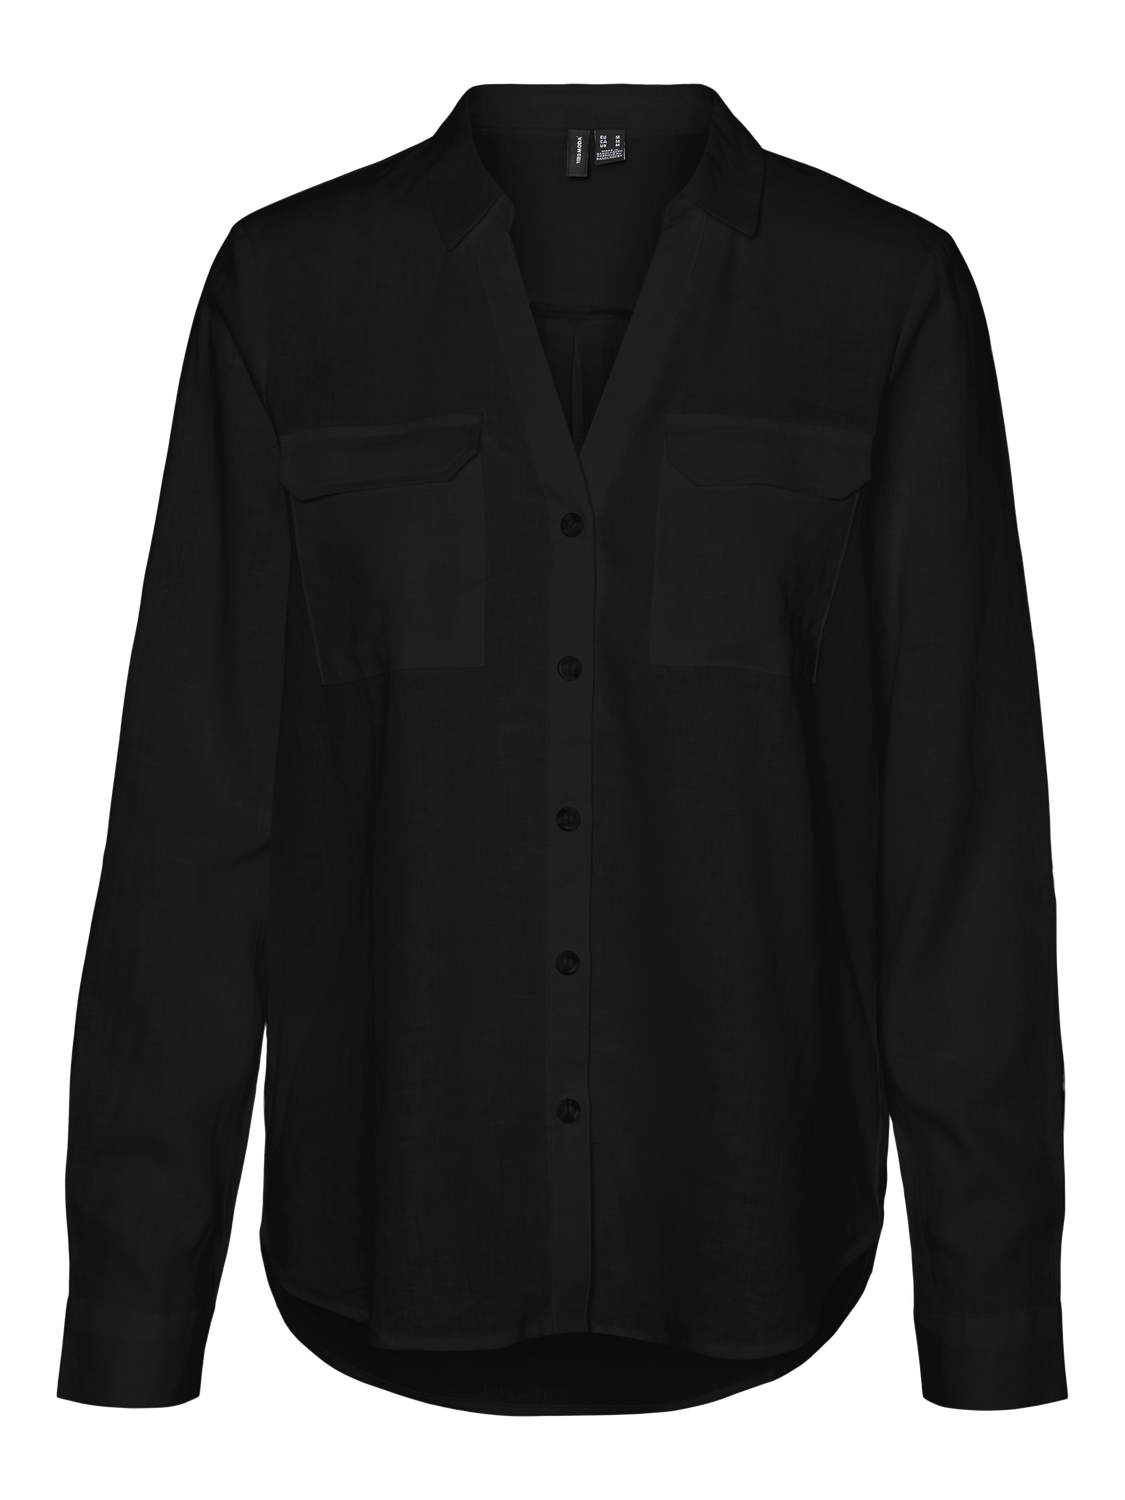 VMLINN bumpy Shirt - Black